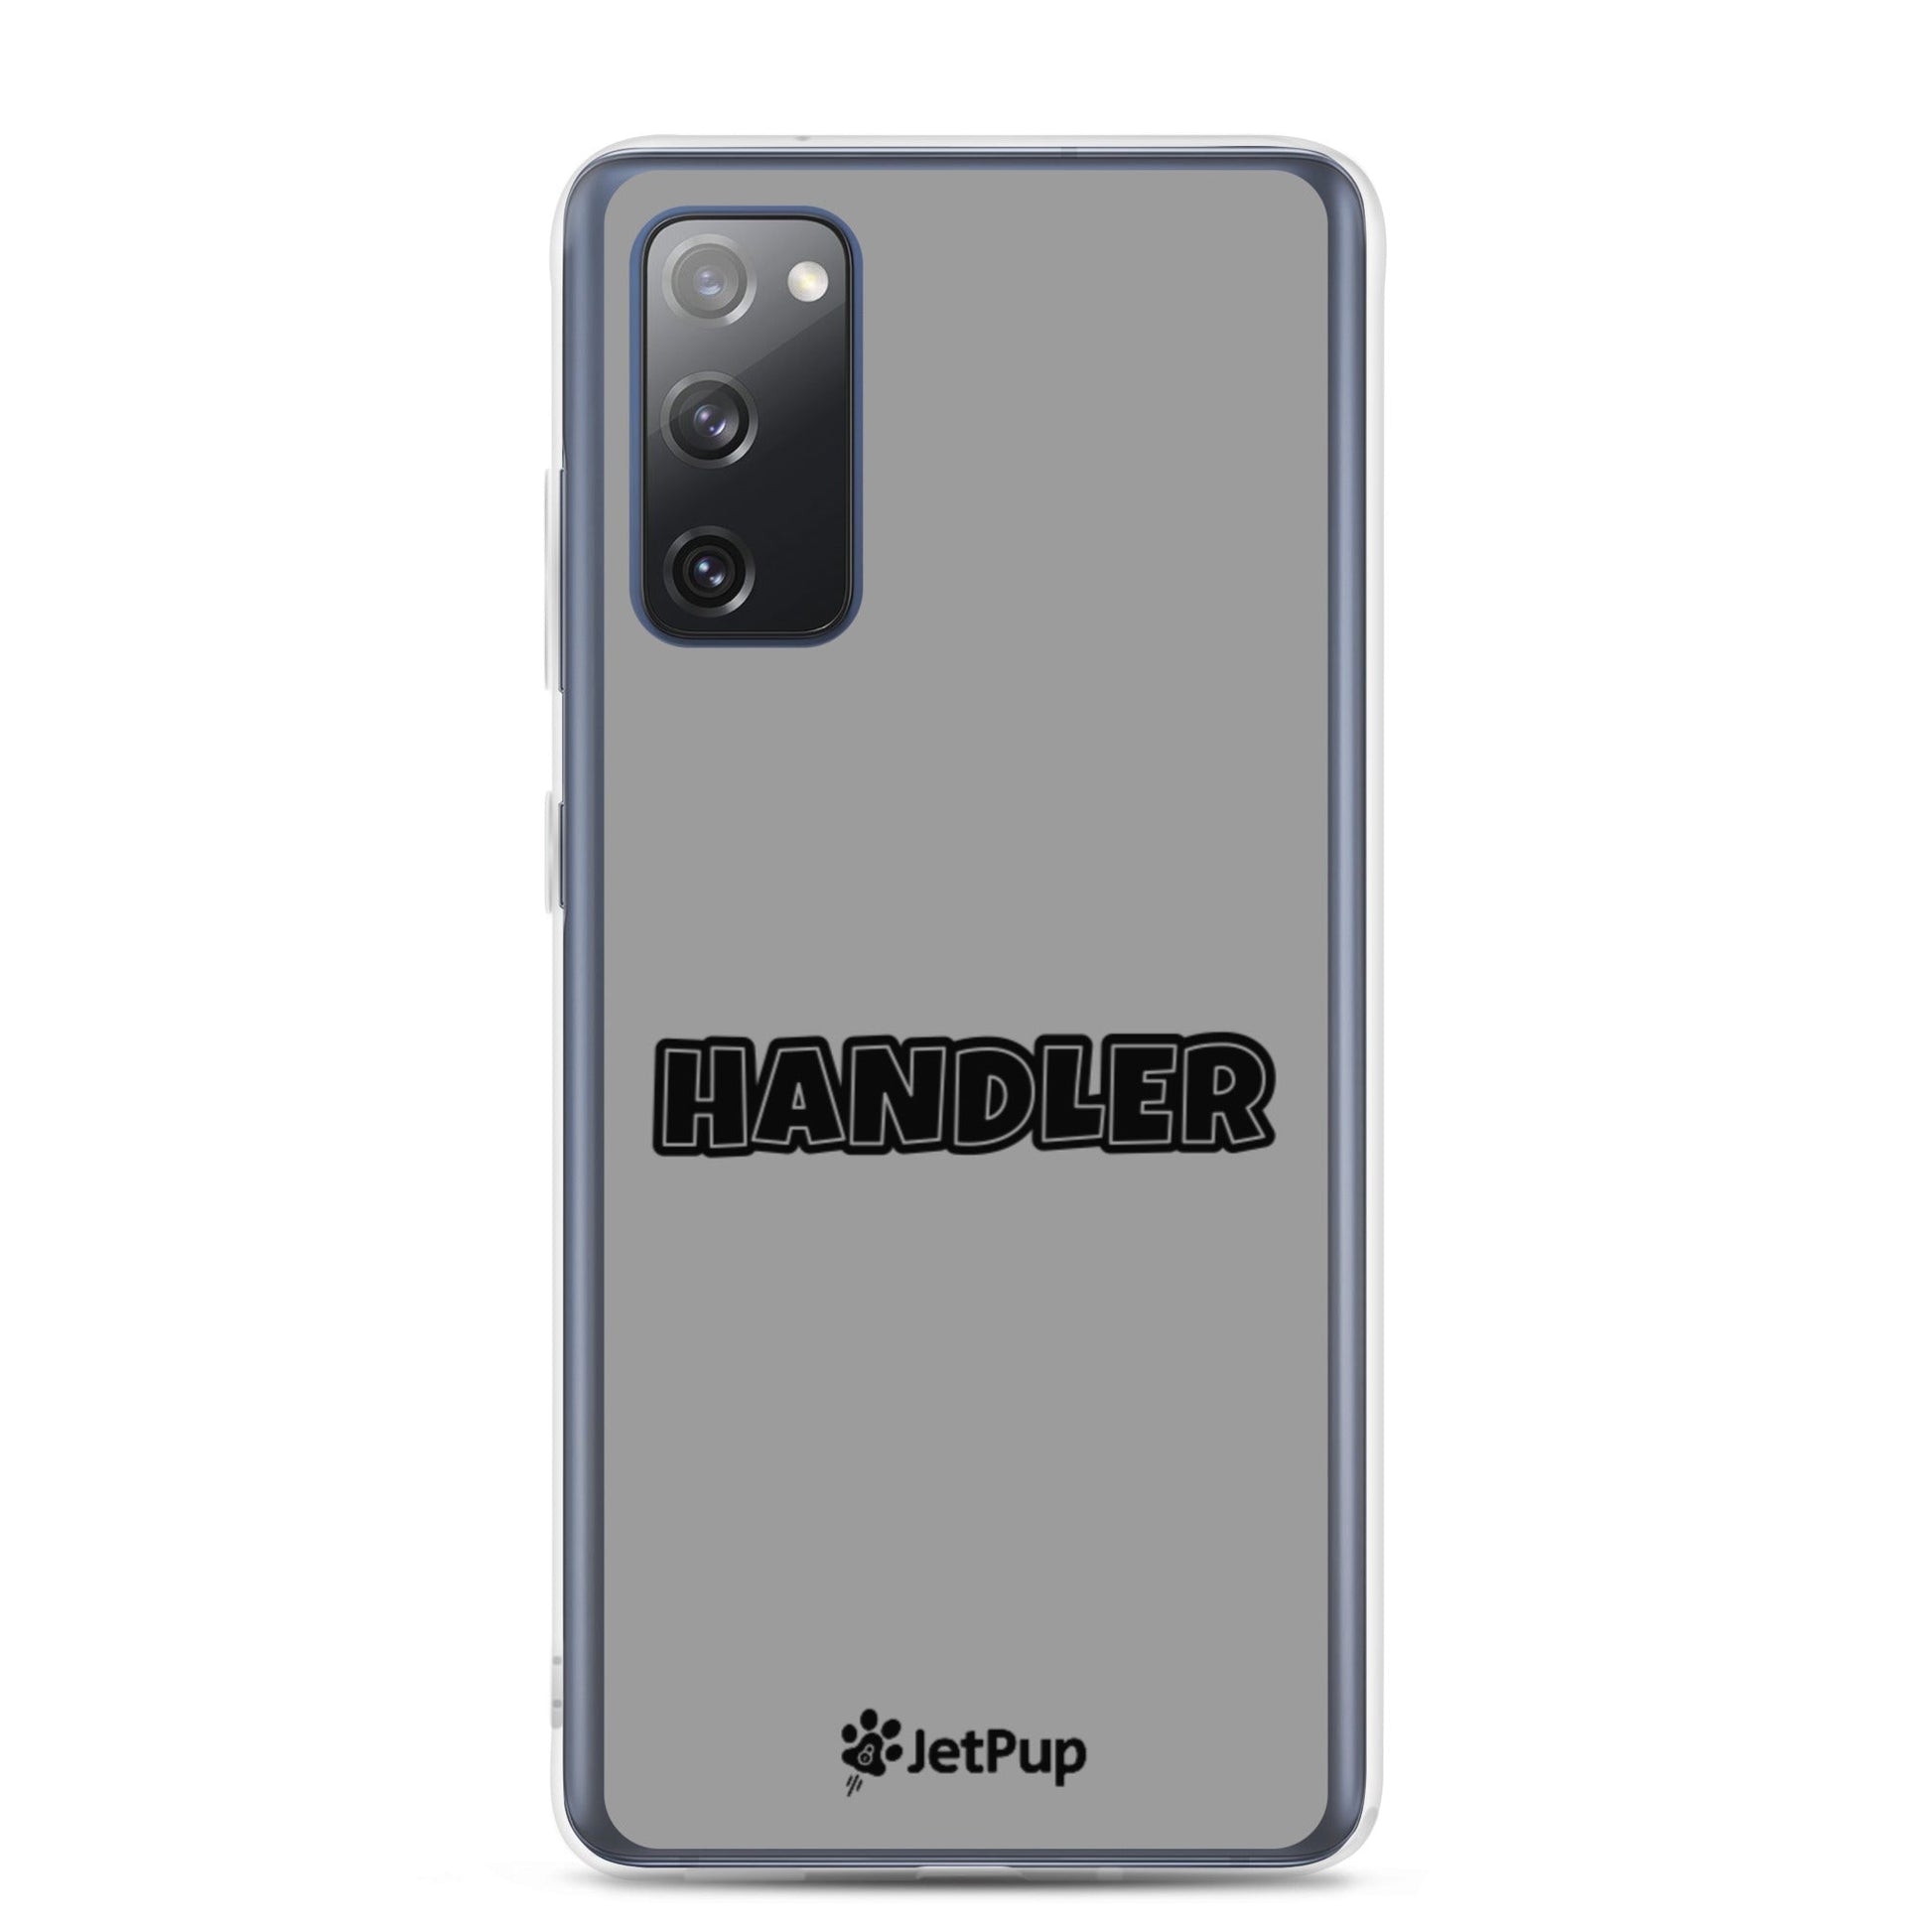 Handler Samsung Case - Grey - JetPup